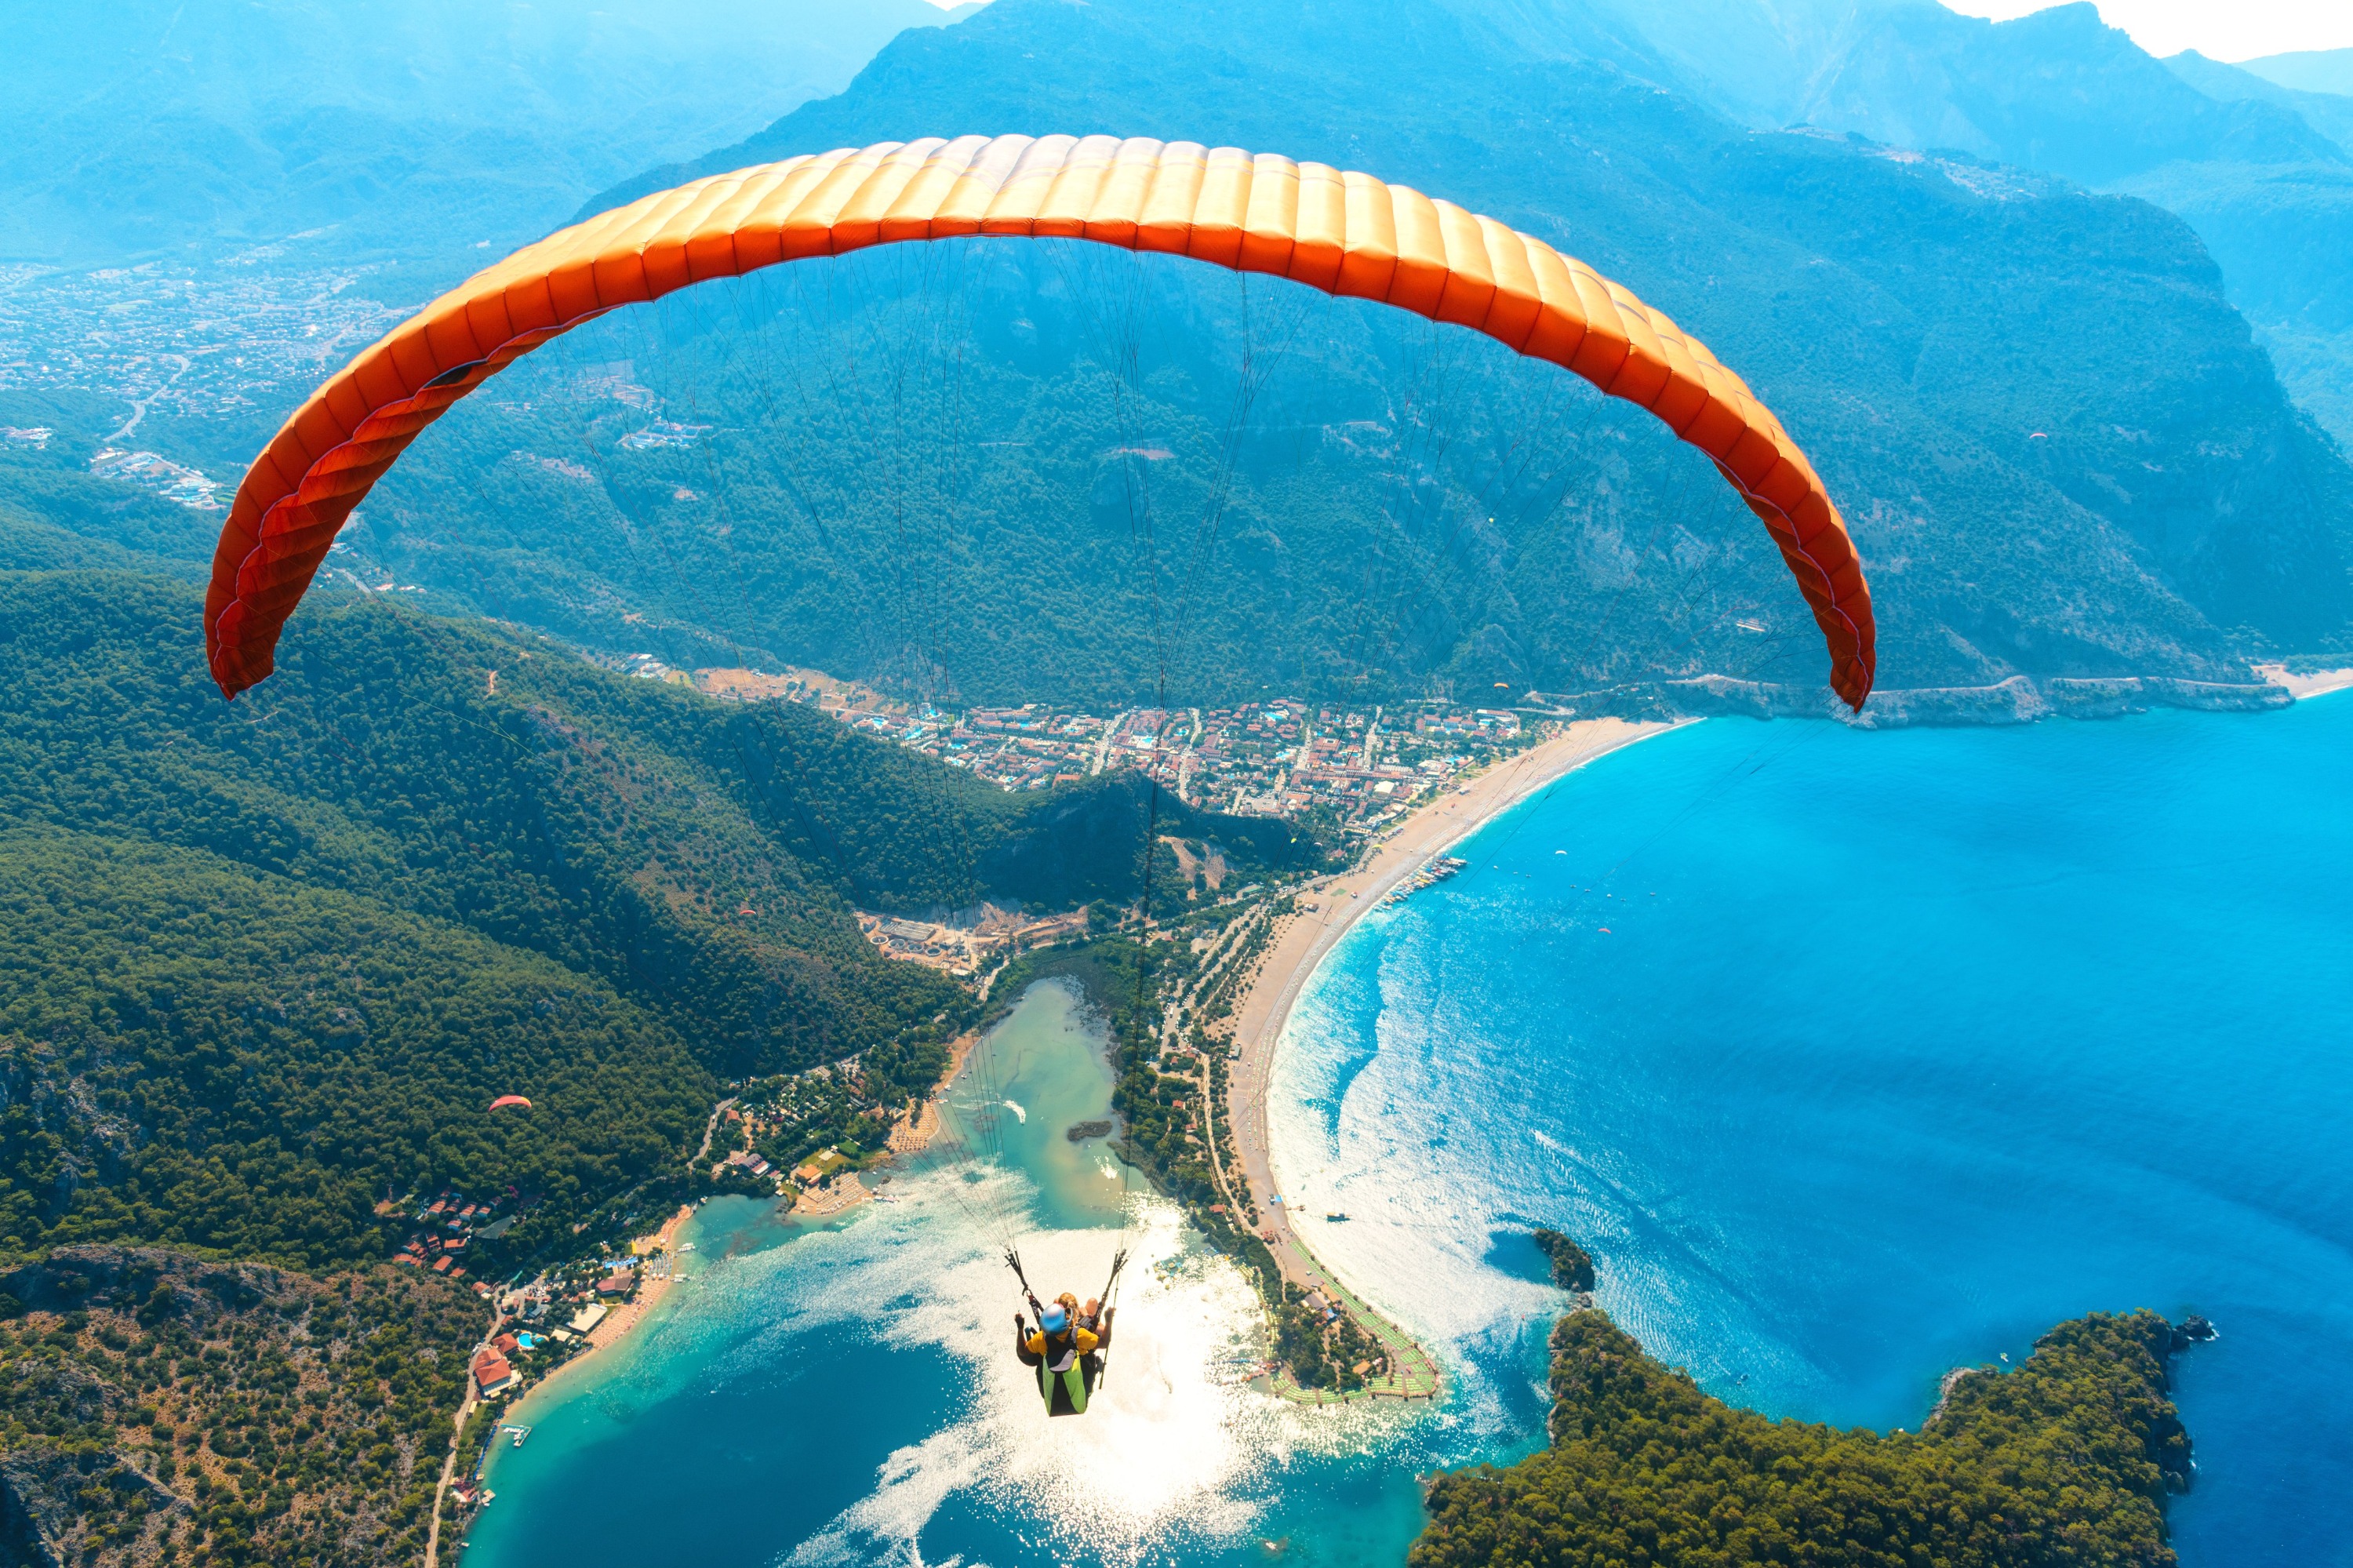 歐魯旦尼斯雙人滑翔傘體驗 - 費特希耶出發（含照片 & 視頻）